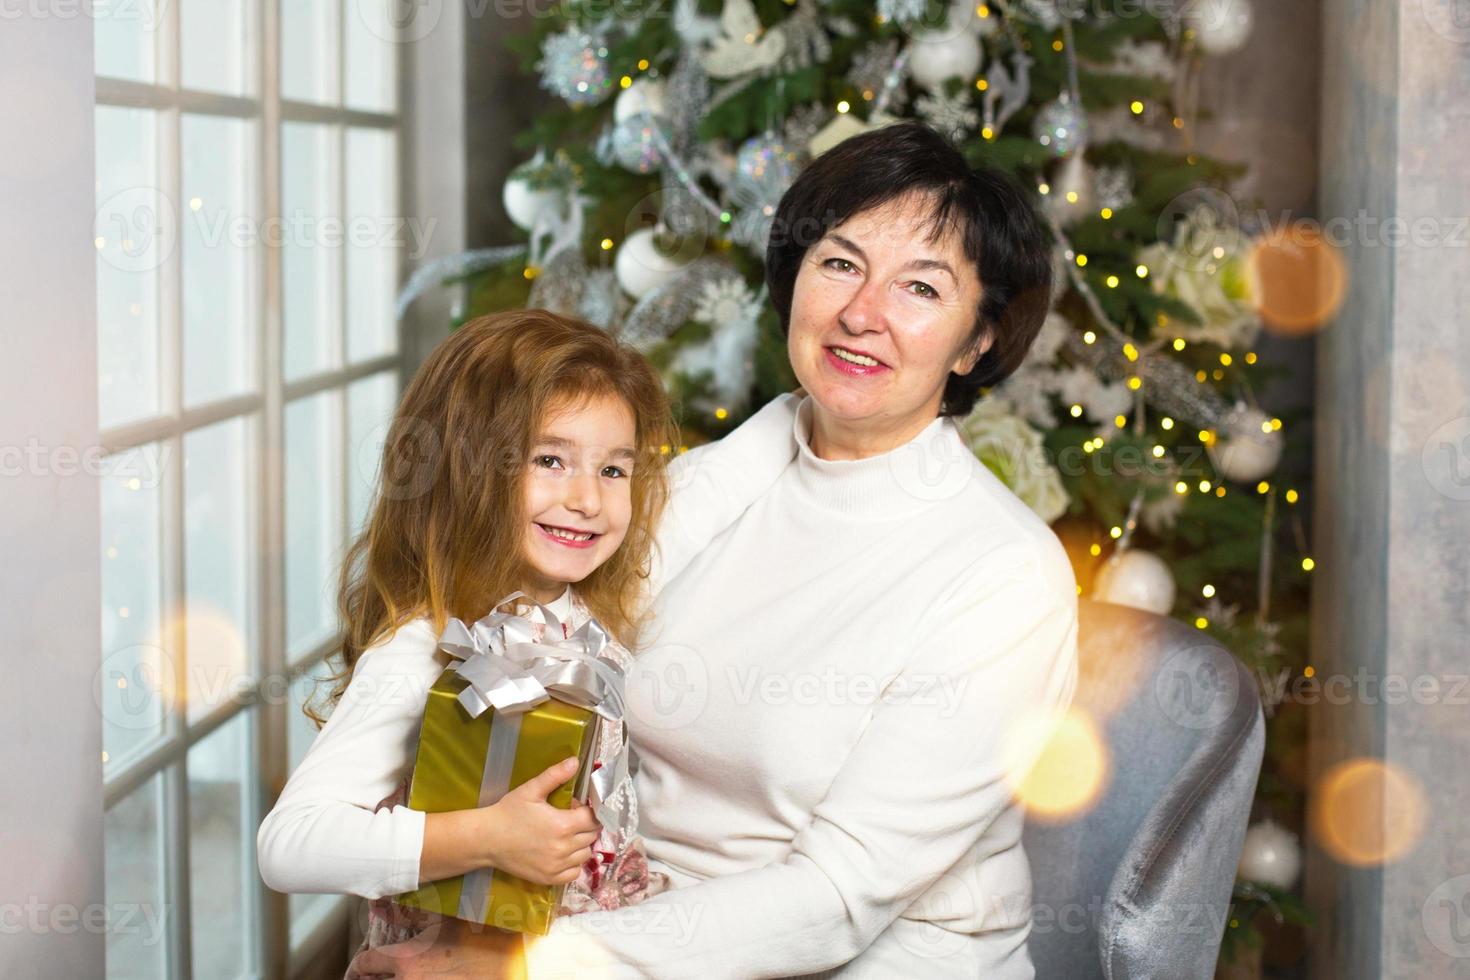 mormor med en liten flicka på de bakgrund av jul dekorationer och en stor fönster. familj Semester, känslor, gåva låda. barnbarn på mormors knä. ny år foto